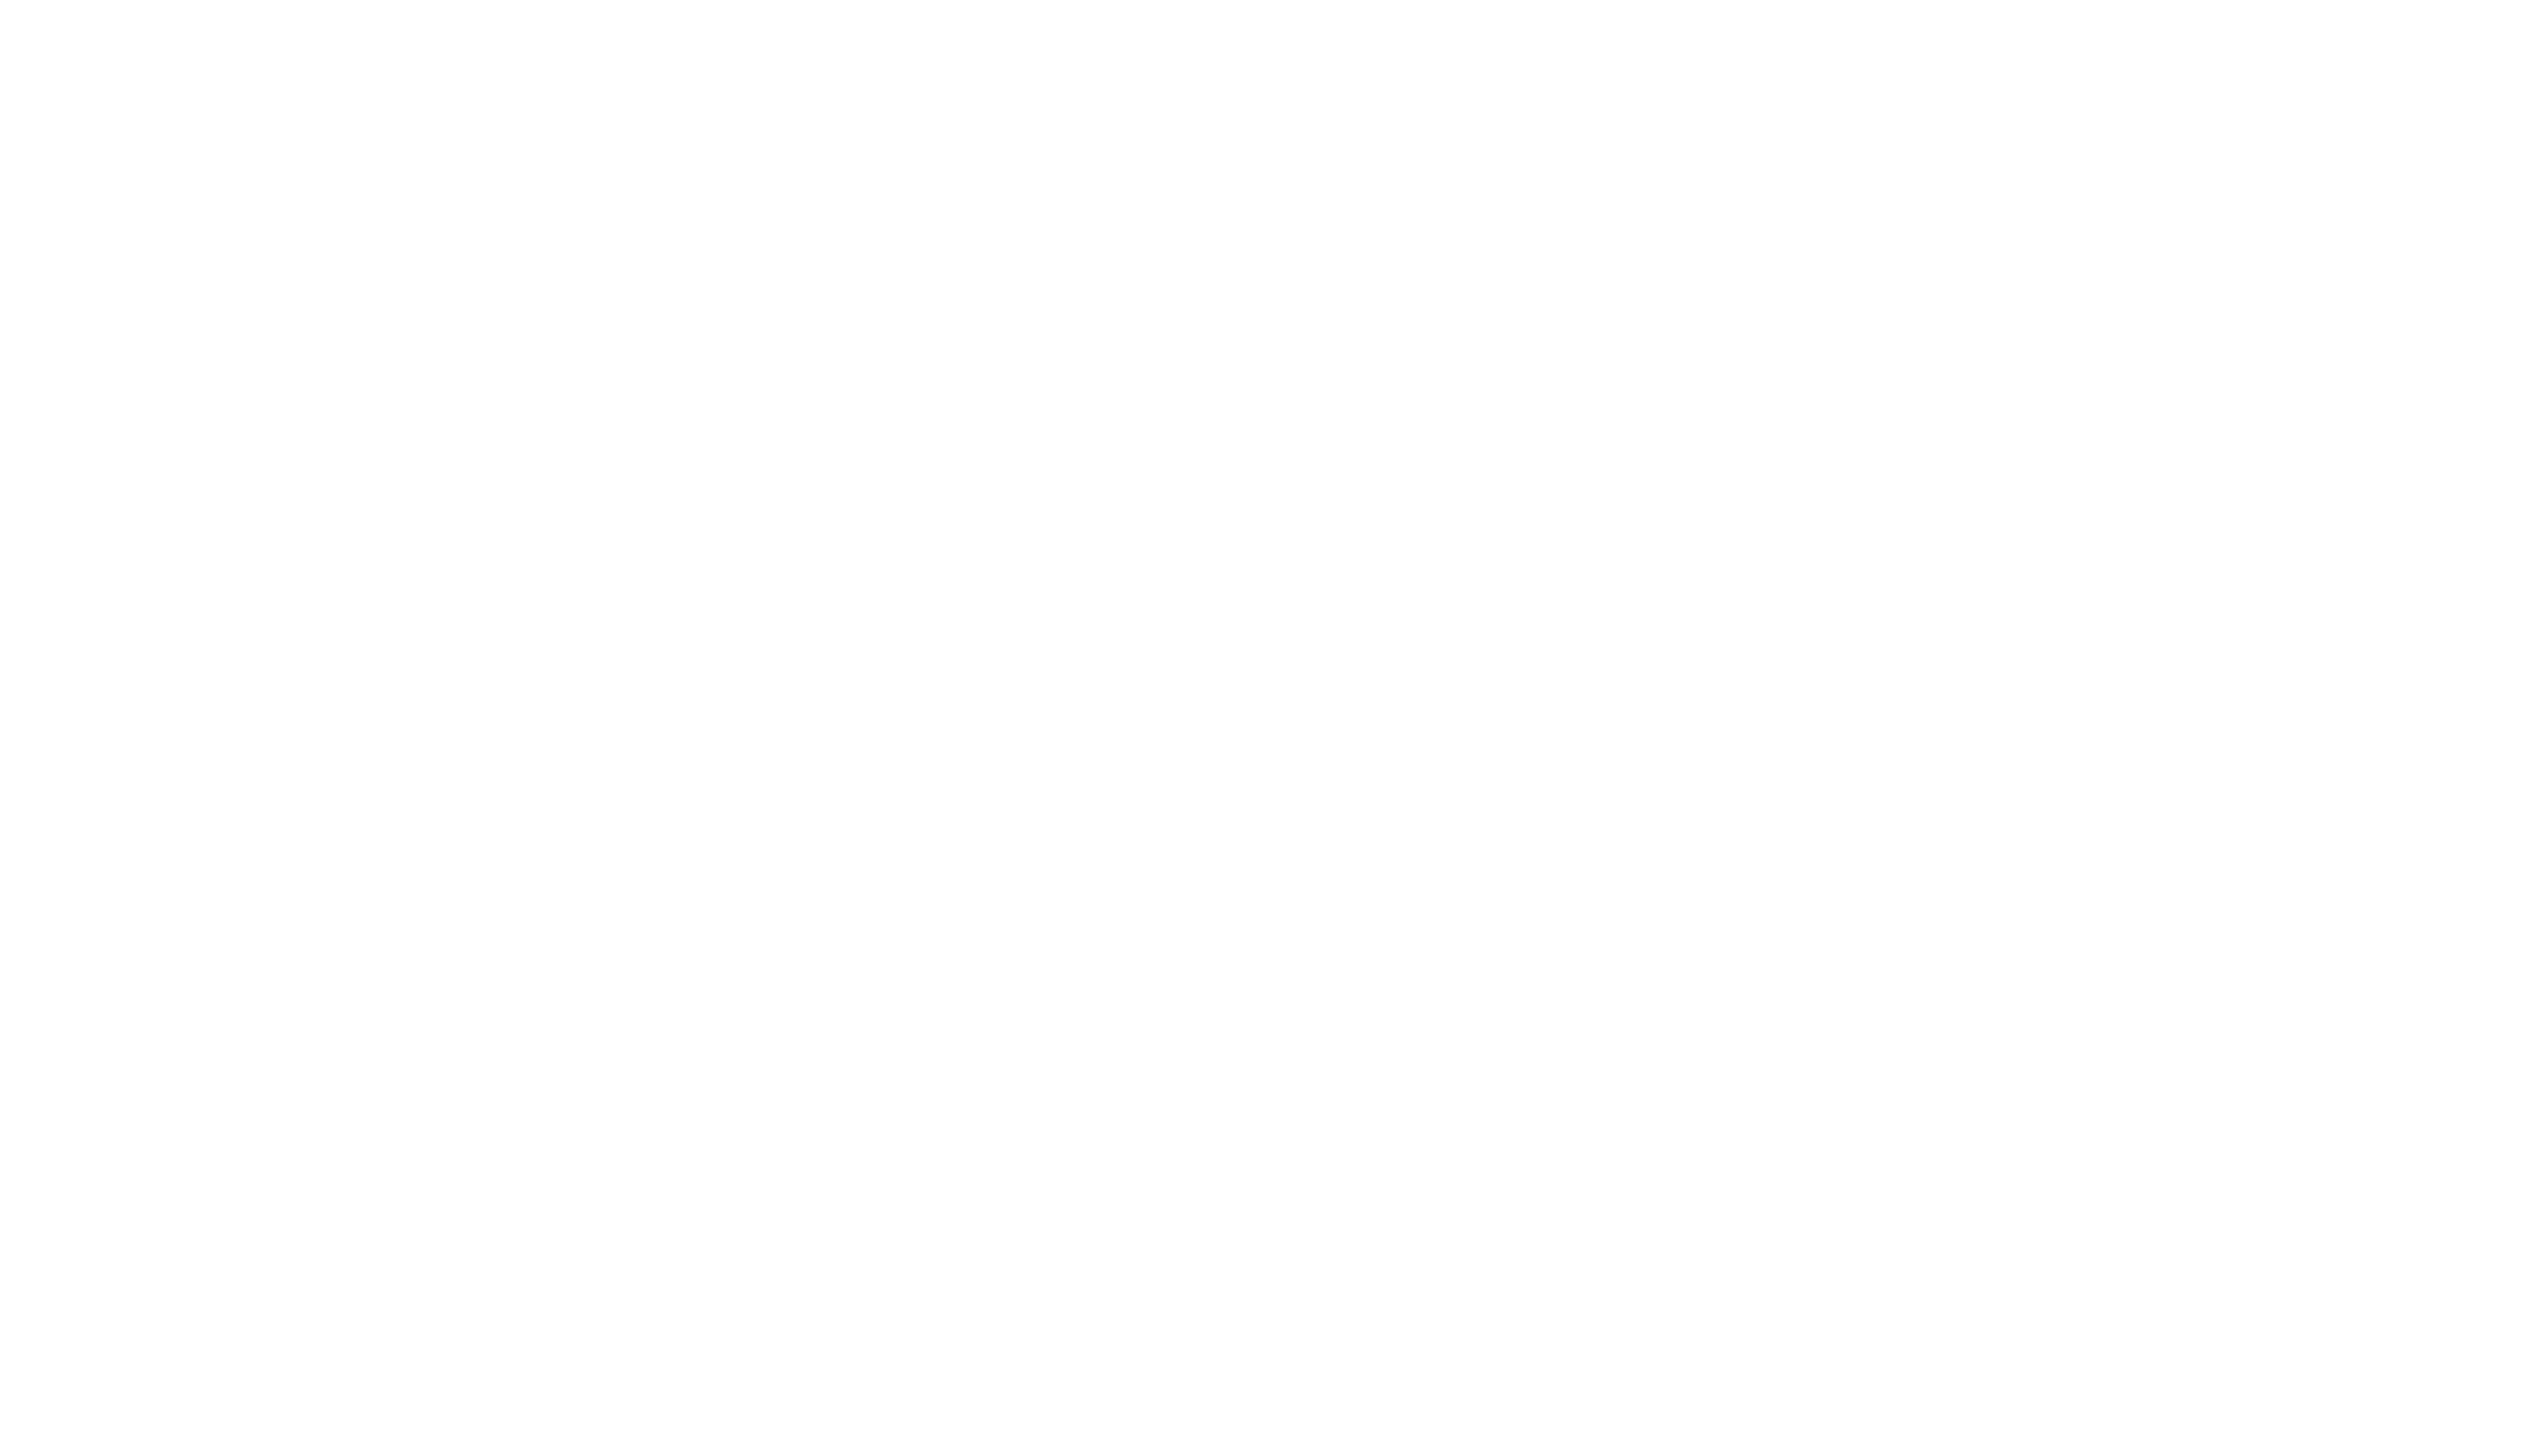 Festival du Cinéma de Brive